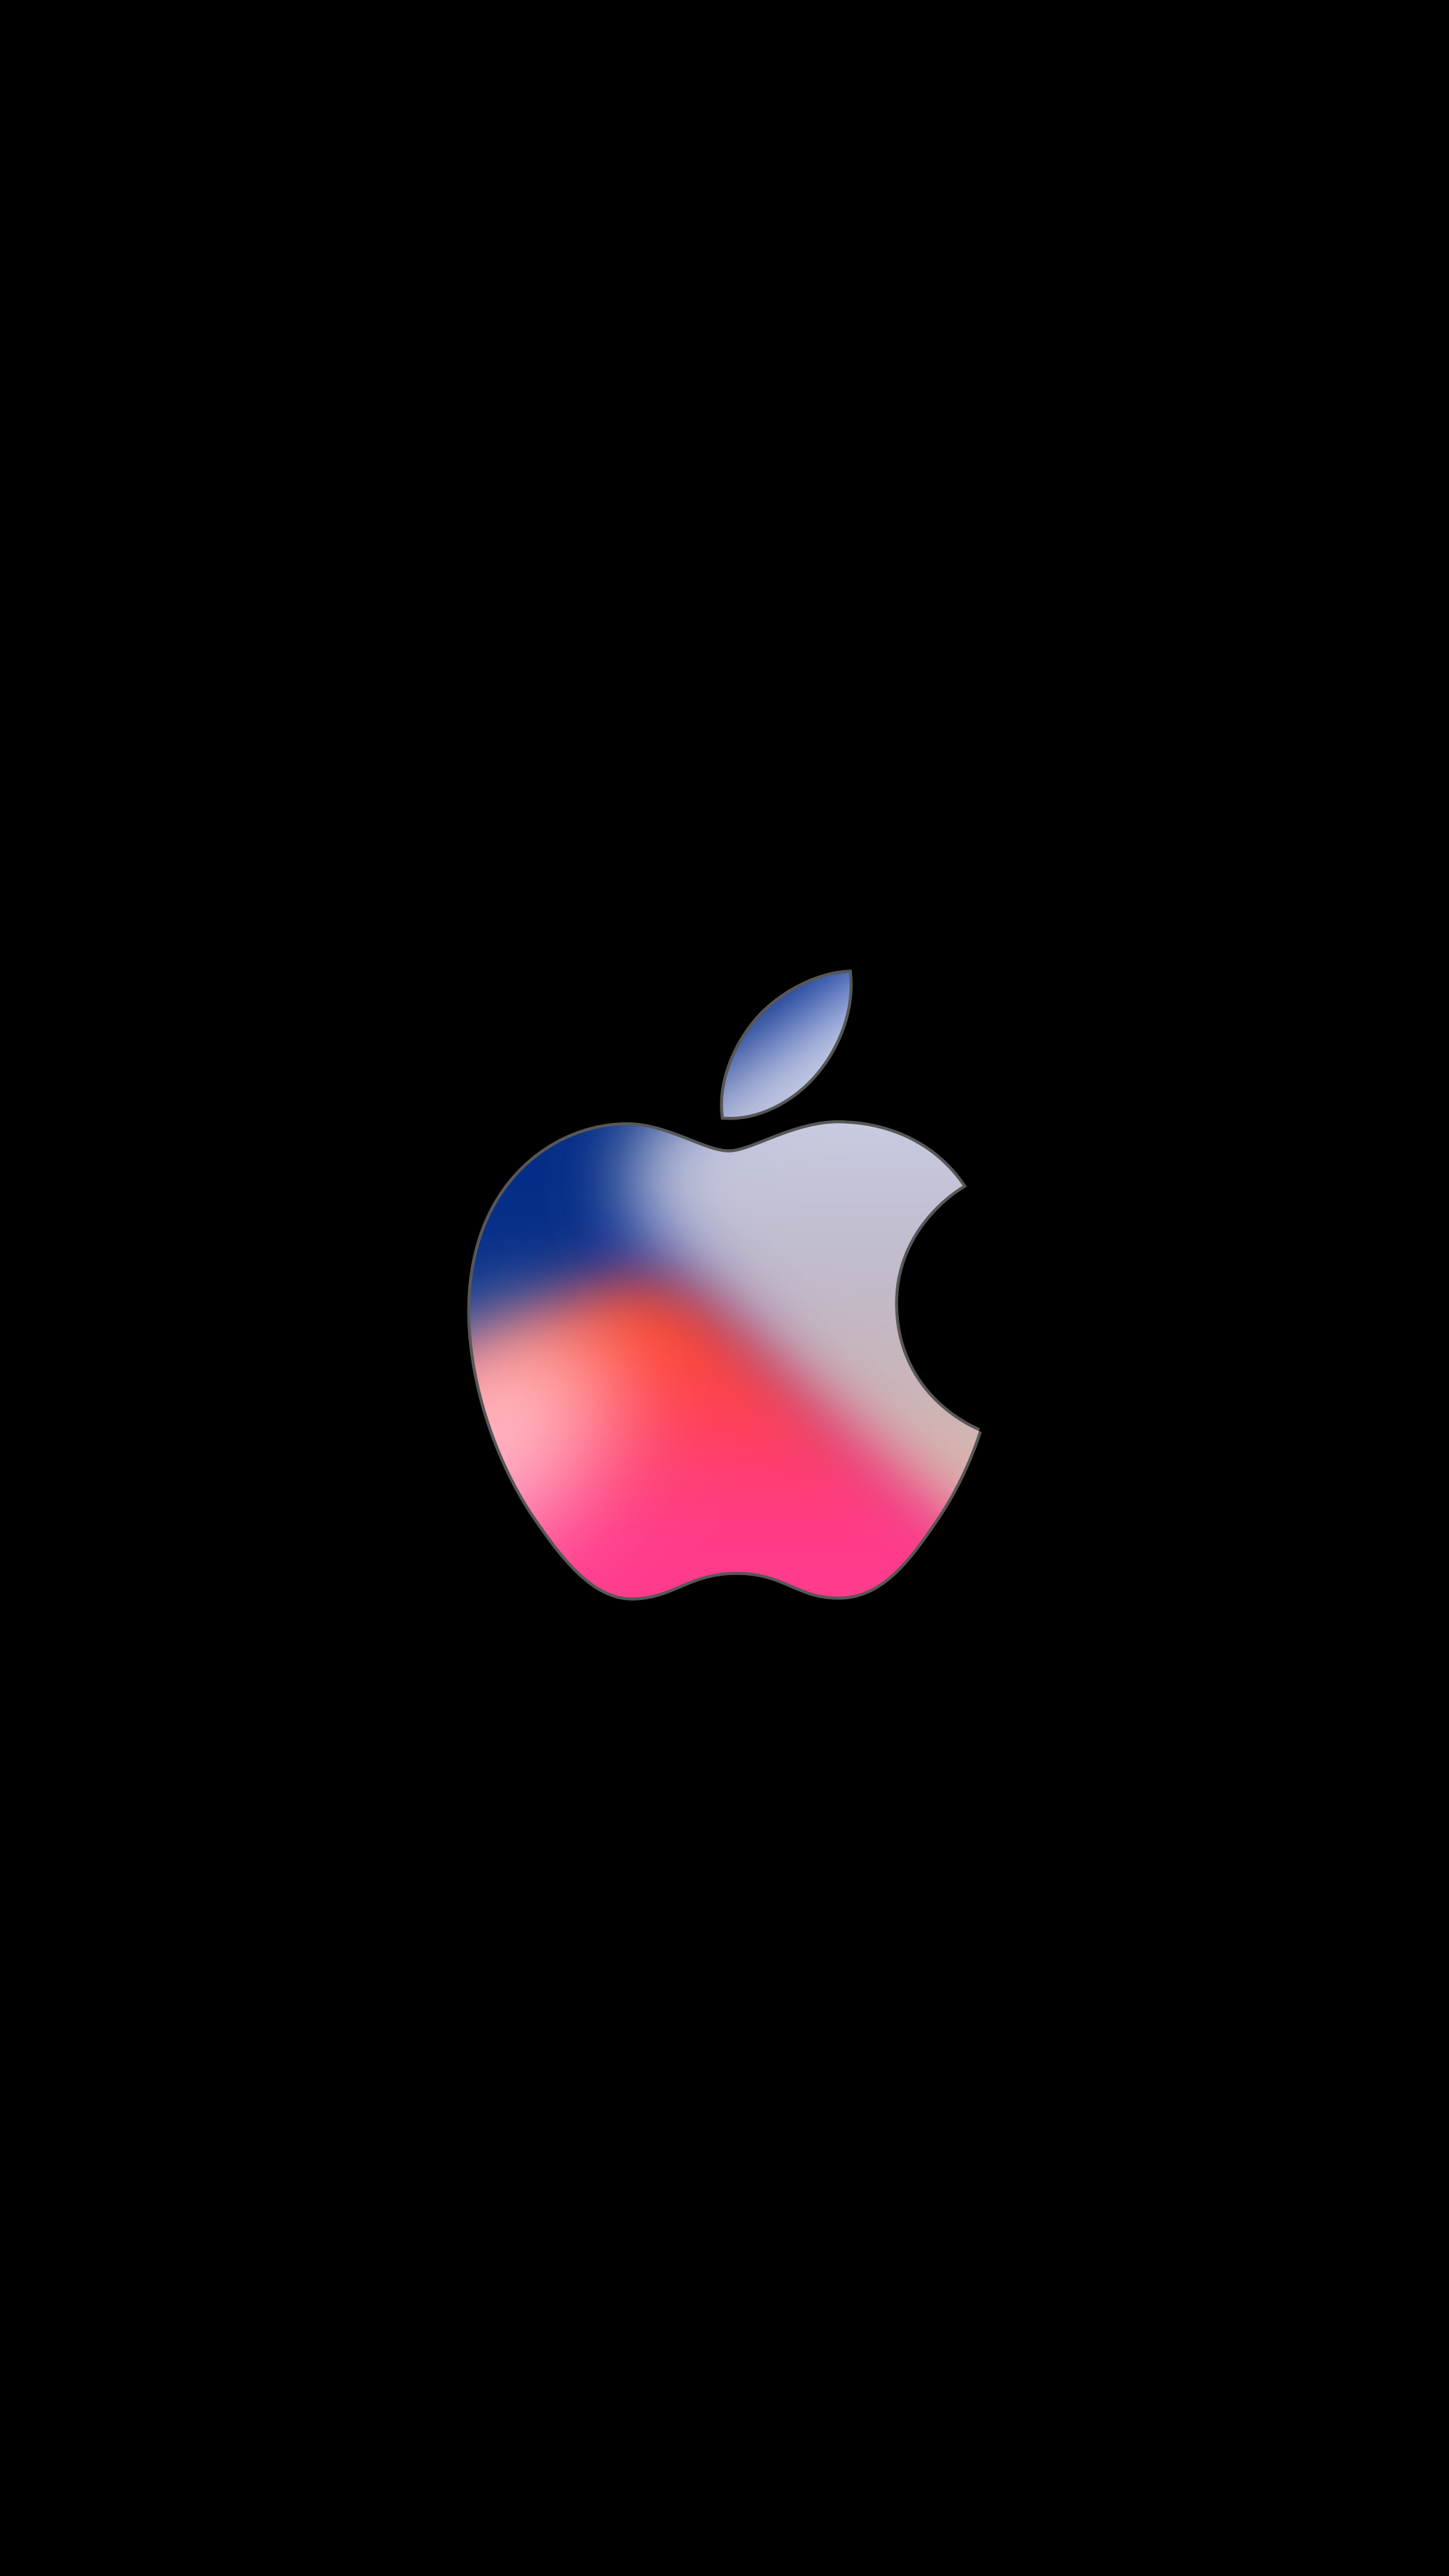 專屬果粉的 iPhone 8 發佈會邀請函式樣 4K iPhone 桌布 - 流動日報